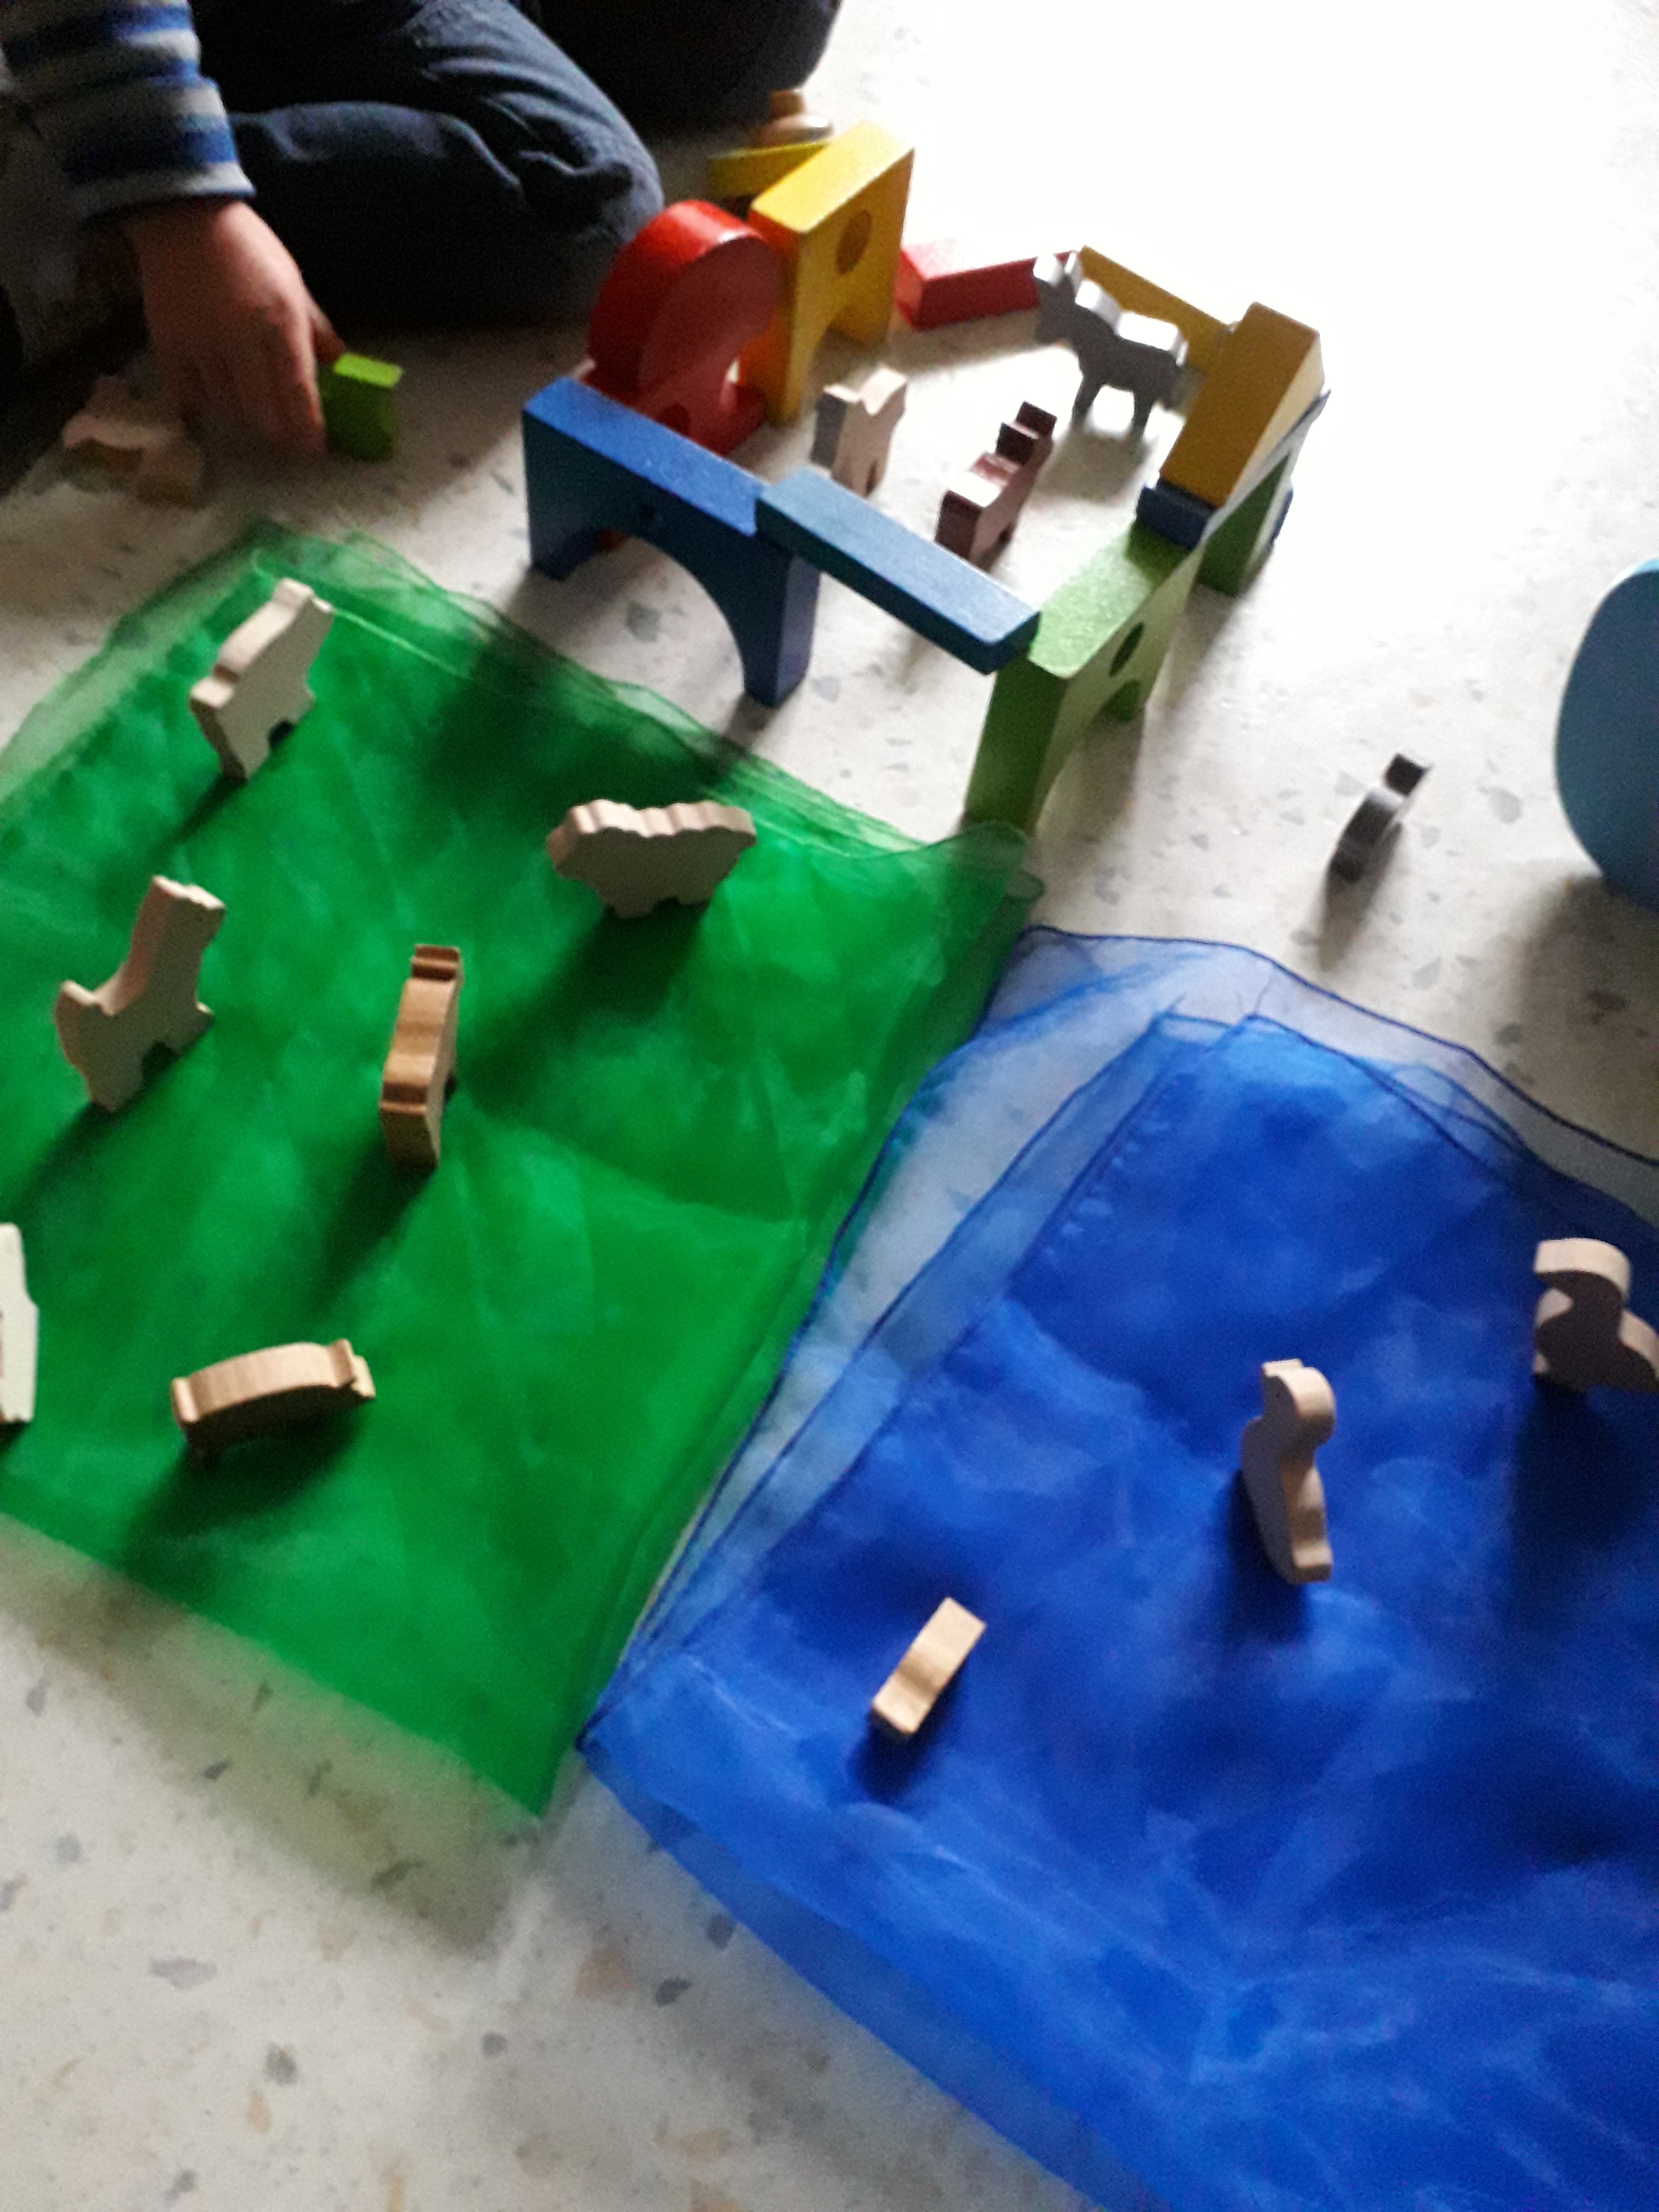 Einige Holz-Bausteine in Haus-Form sind im Viereck aufgestellt, zwischen ihnen stehen kleine Tierchen aus Holz. Daneben liegen ein blaues und ein grünes Tuch, auf denen auch mehrere Tiere stehen. In der oberen linken Ecke sind die Beine und Hände eines Kindes zu sehen, das gerade mit den Holztieren spielt.